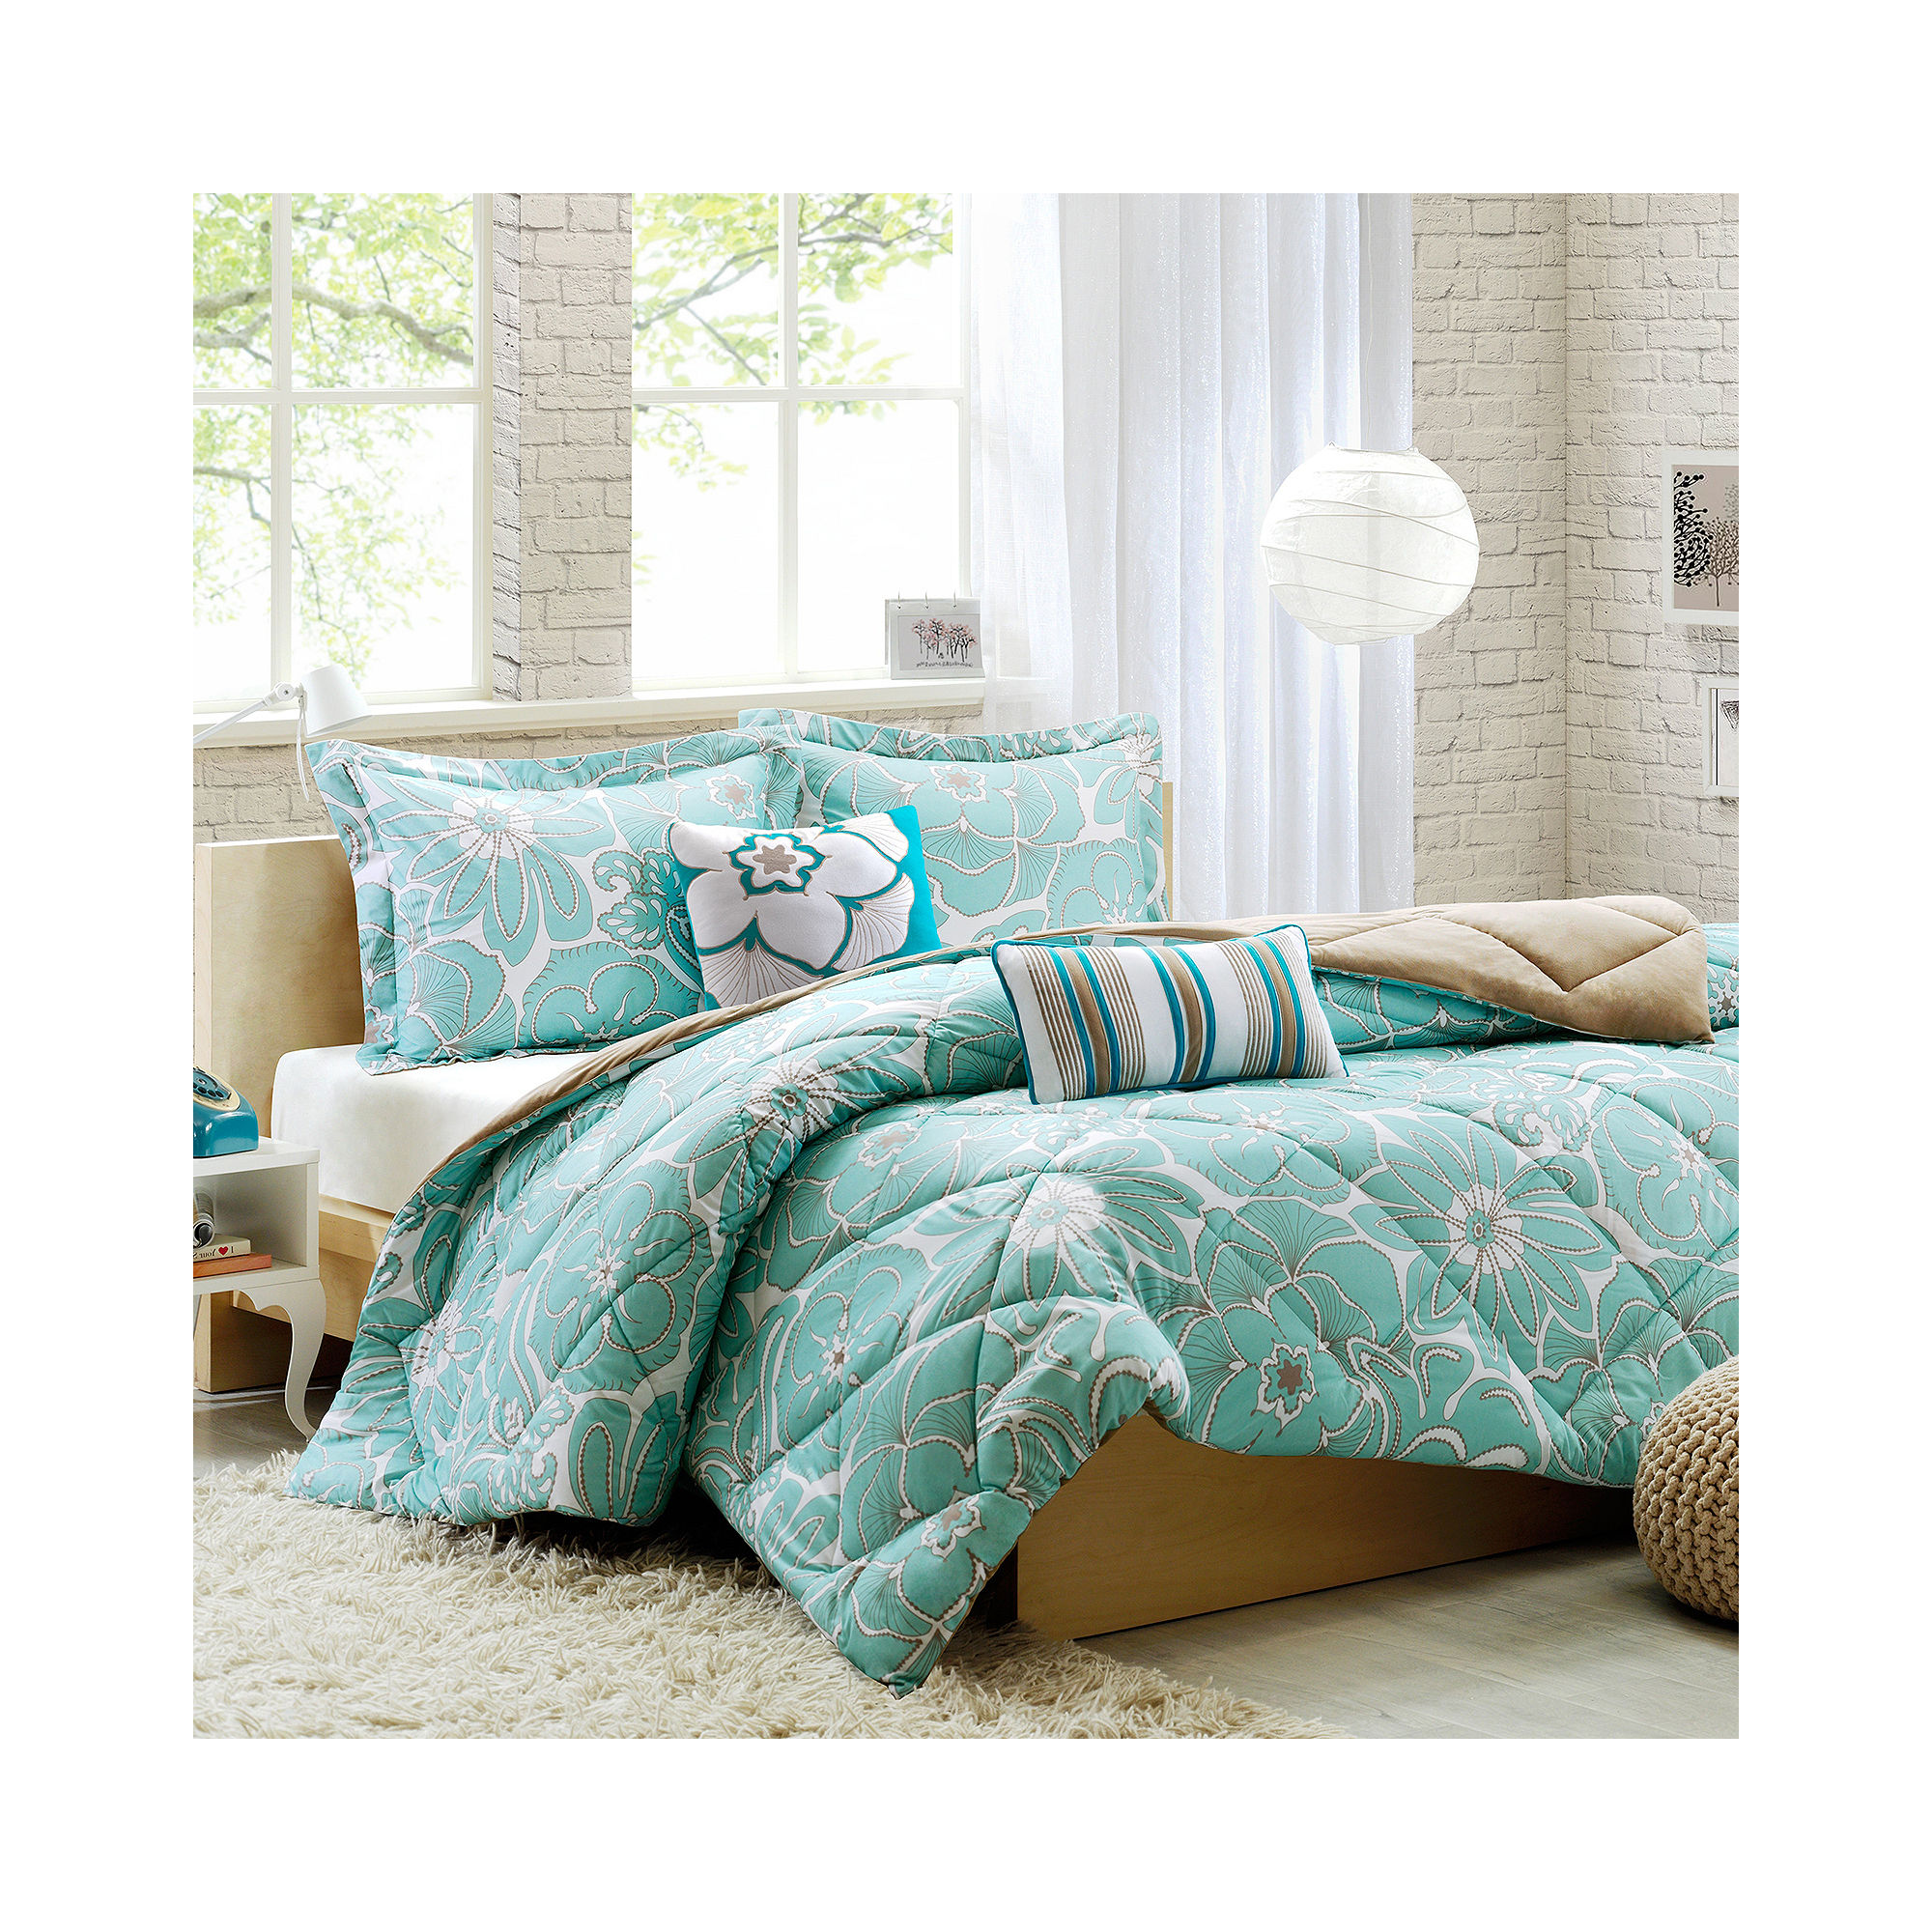 Intelligent Design Charley Floral Comforter Set